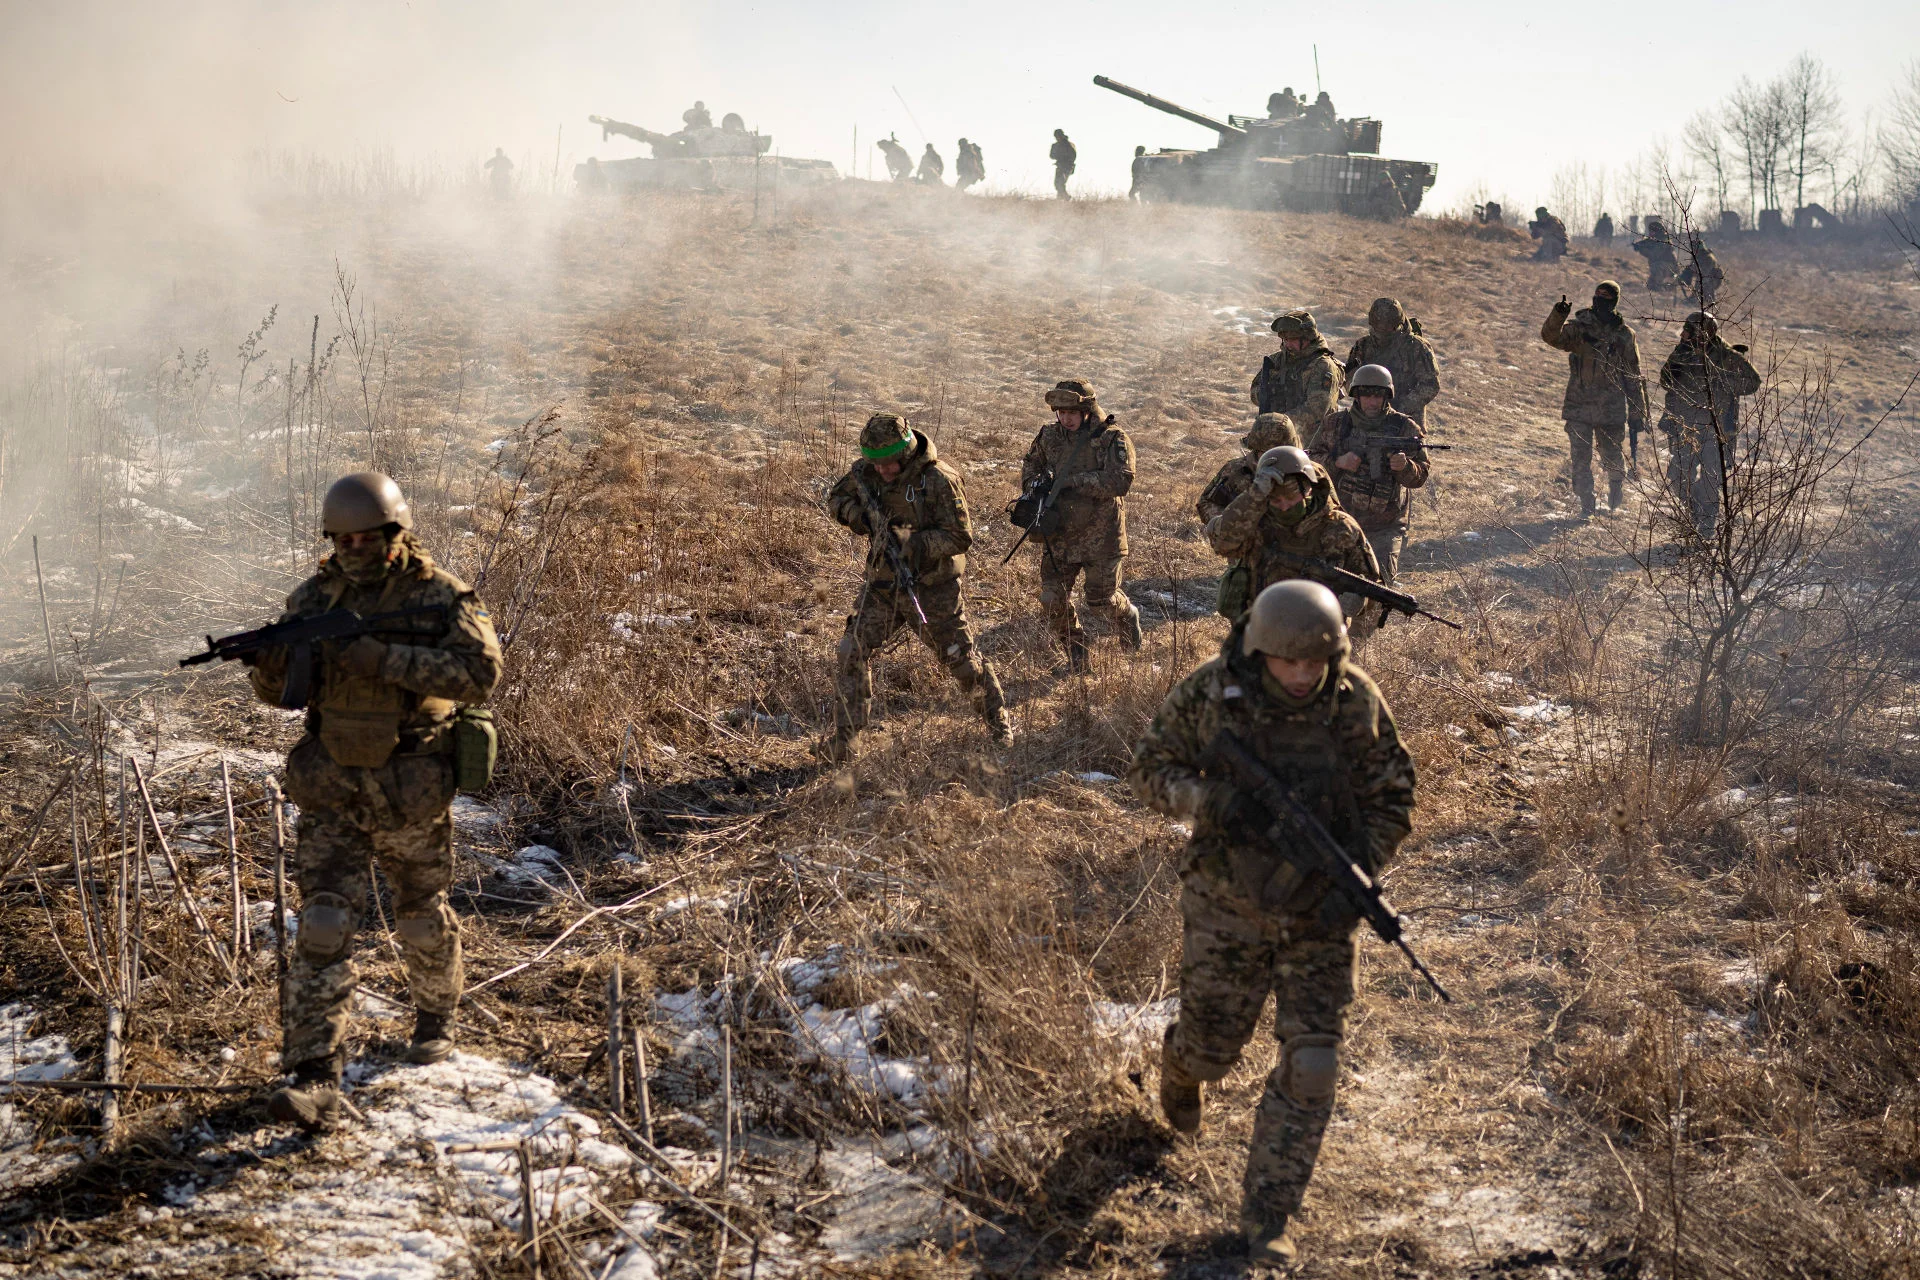  Η Ουάσινγκτον προετοιμάζεται για το ενδεχόμενο αποτυχίας της ουκρανικής αντεπίθεσης: «Έχουν εξαντλήσει τις δυνατότητές τους».